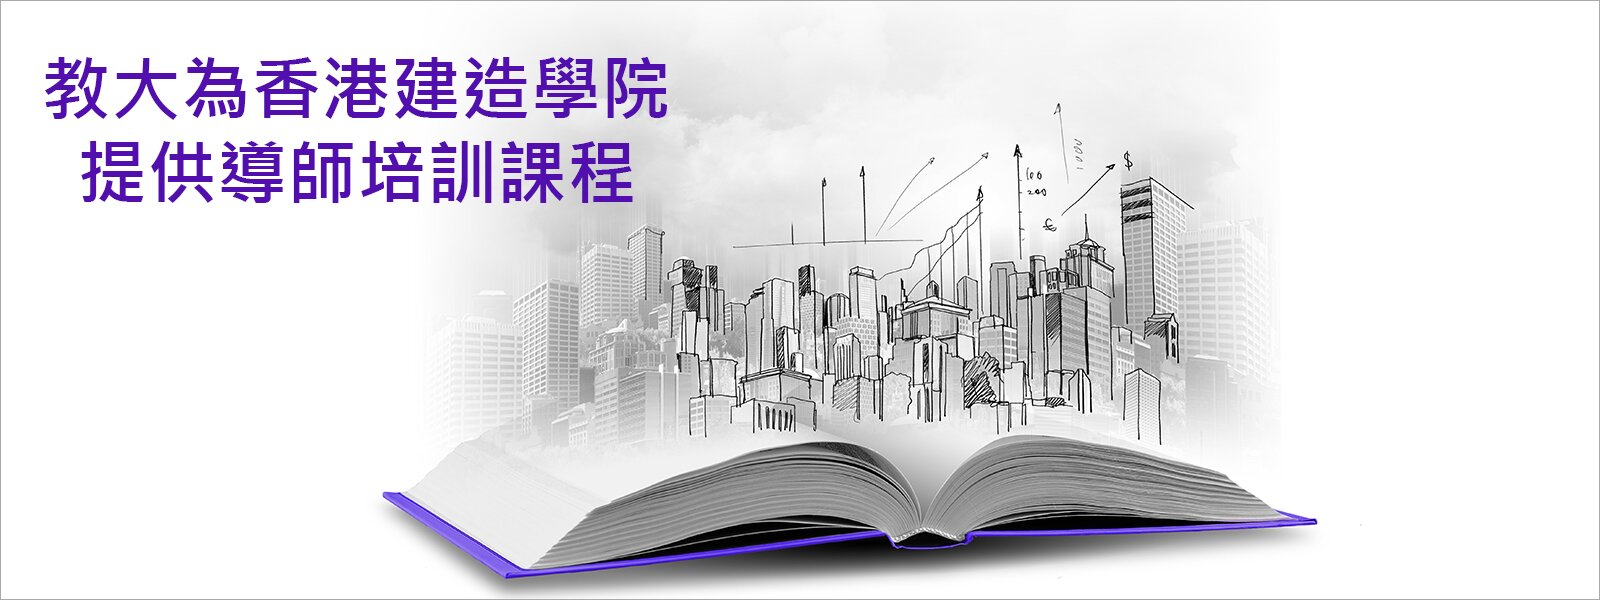 教大為香港建造學院 提供導師培訓課程